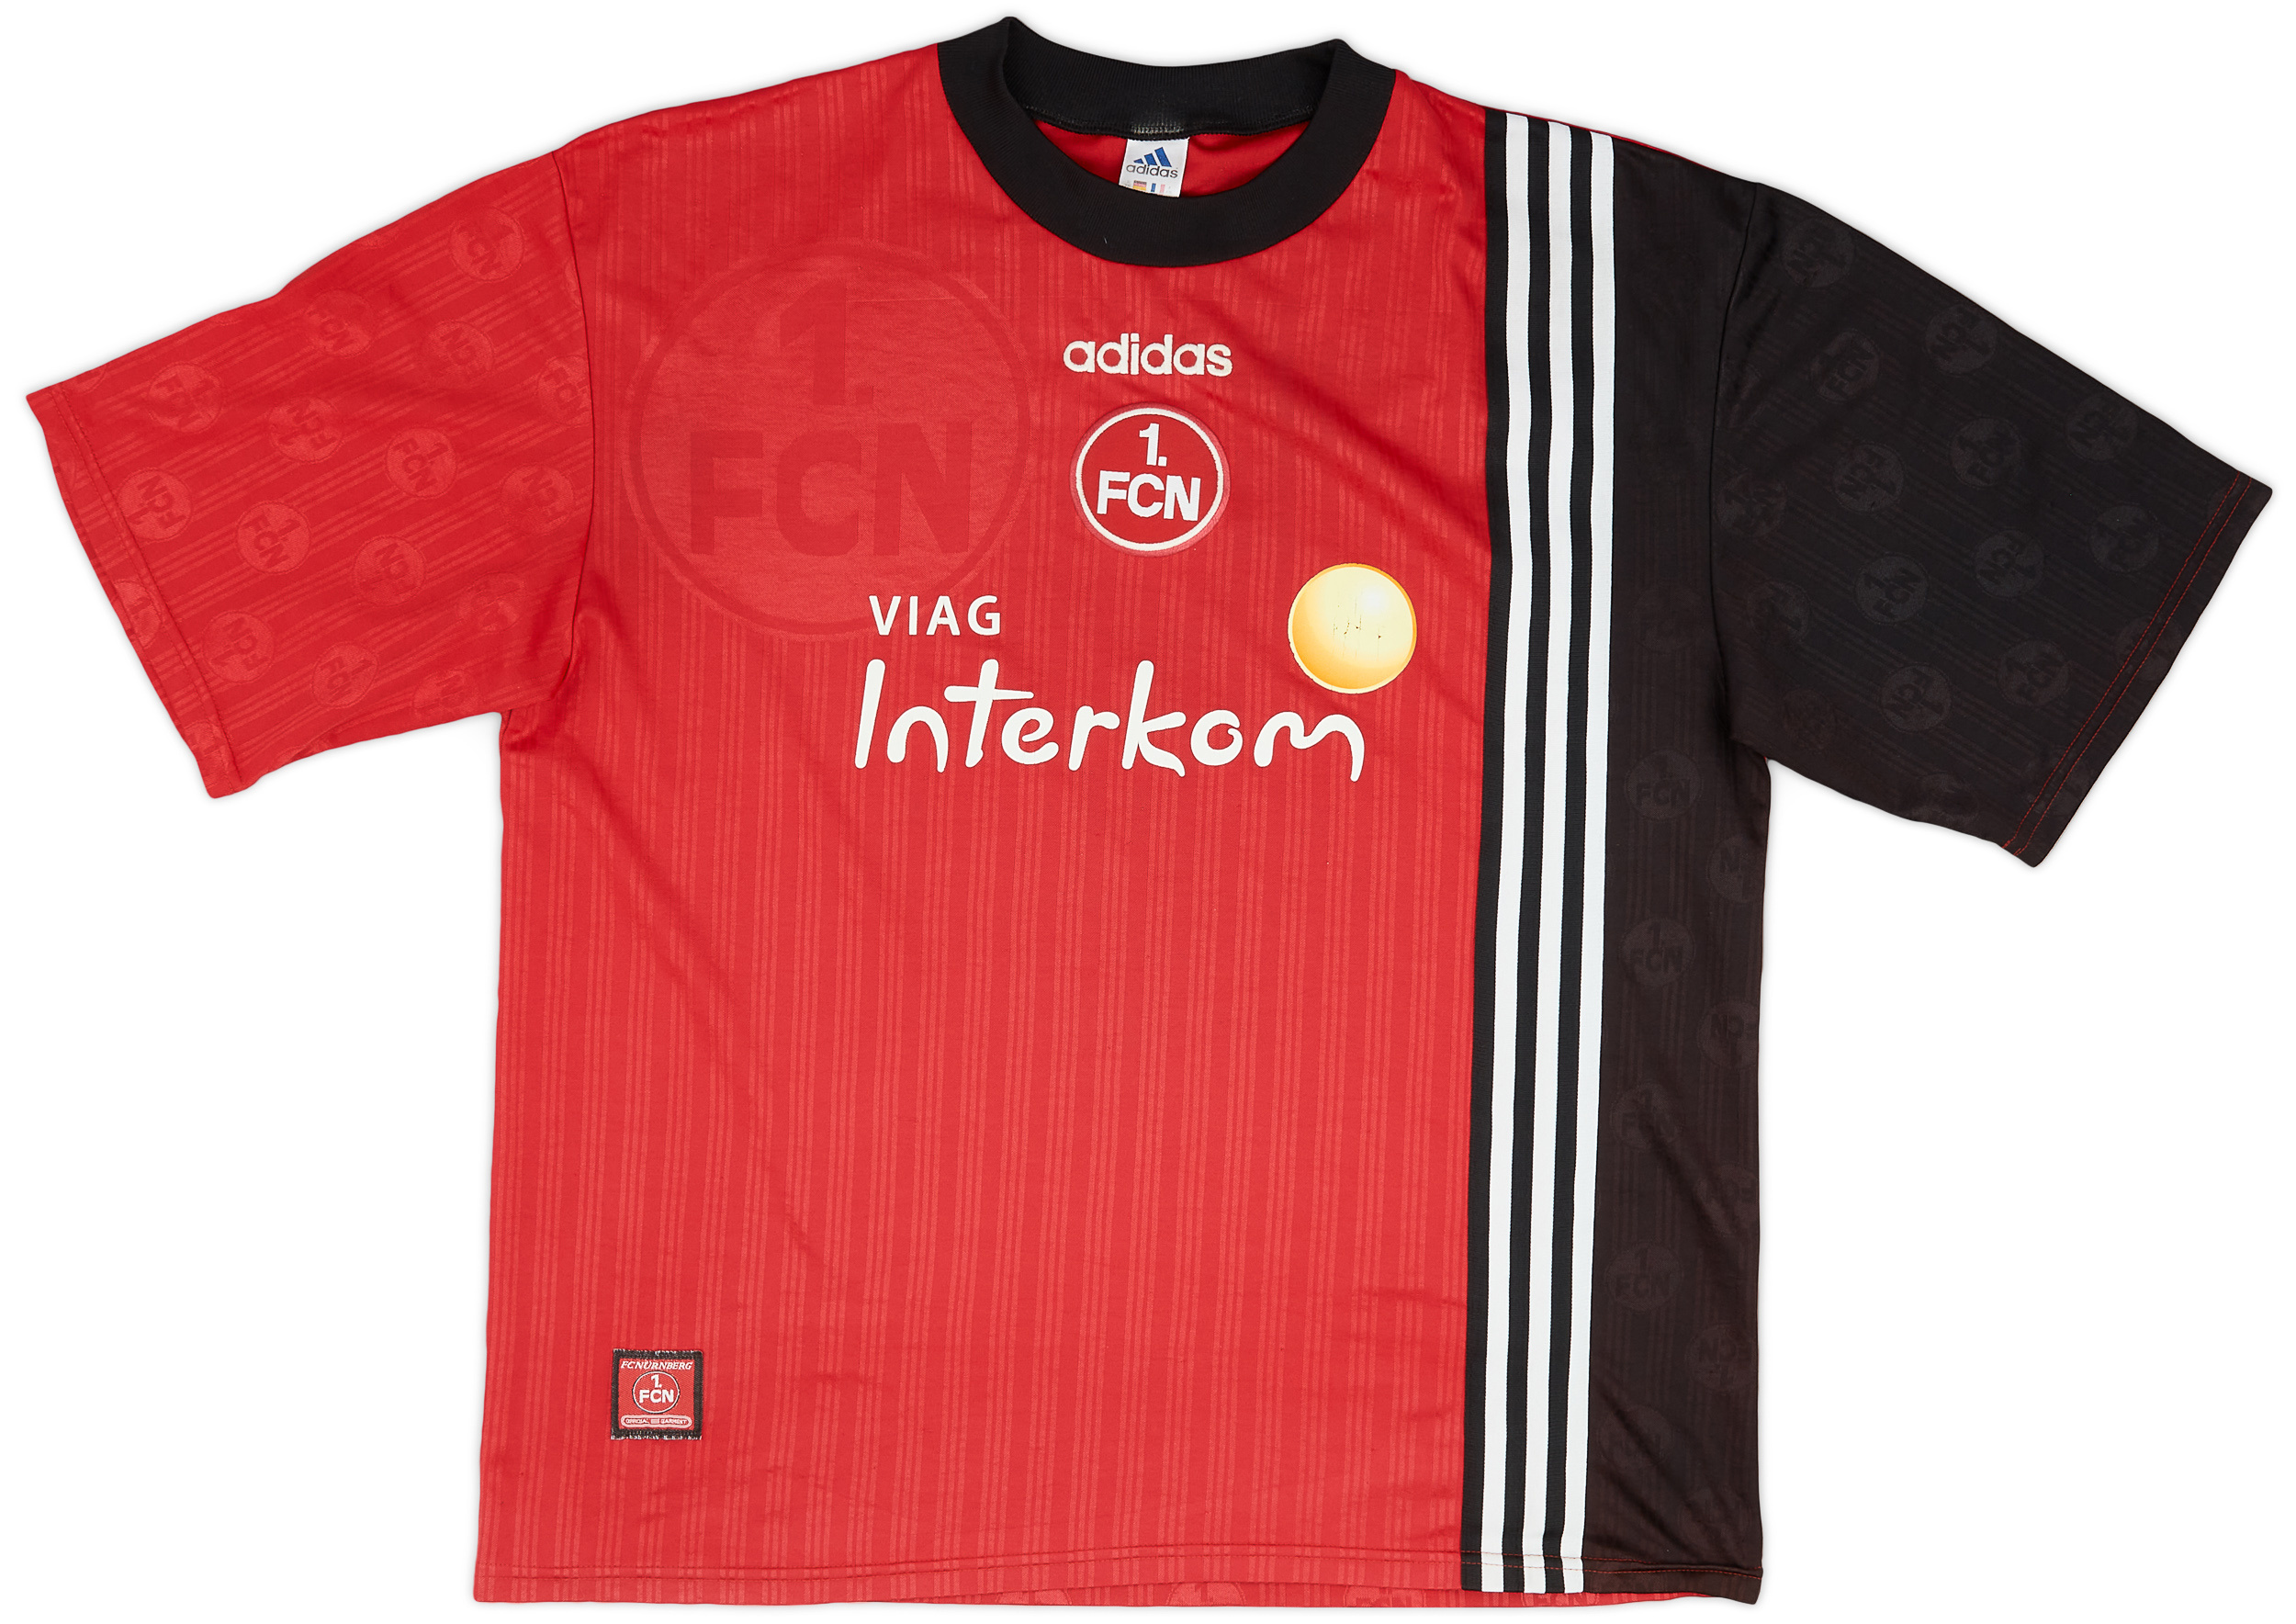 Retro Nurnberg Shirt